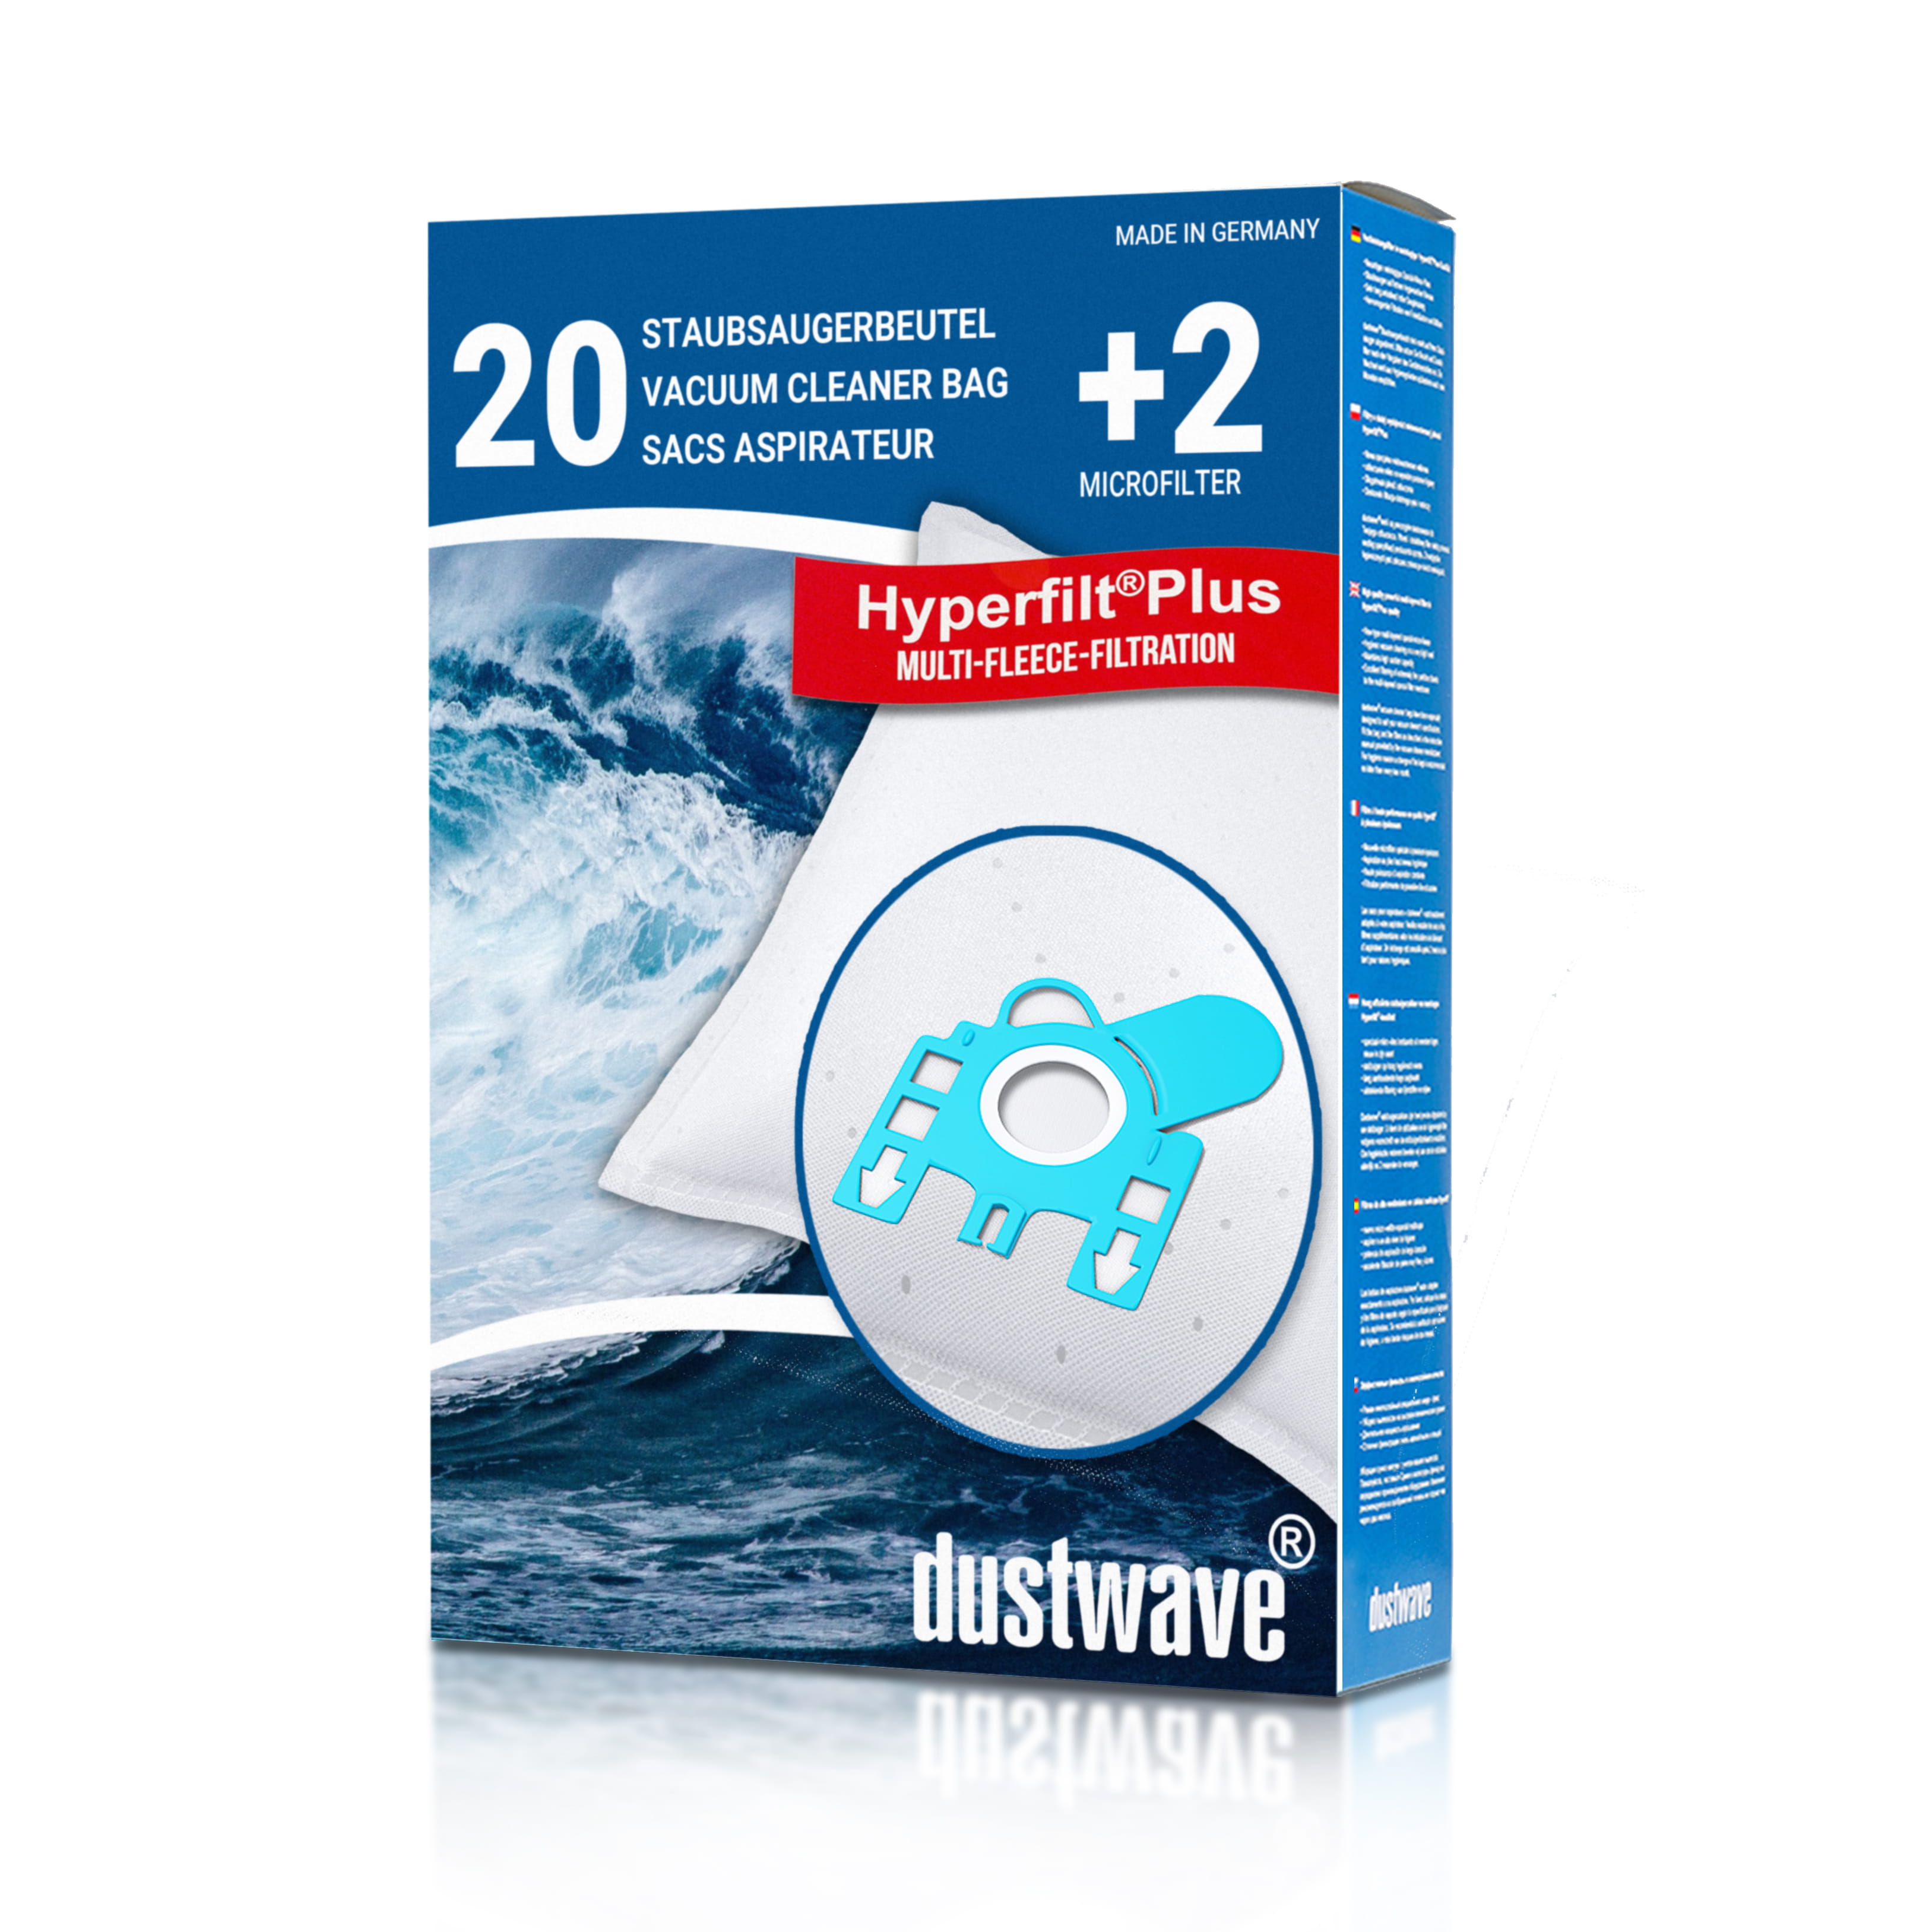 Dustwave® 20 Staubsaugerbeutel für Hoover T6915 / TRT6915 - hocheffizient, mehrlagiges Mikrovlies mit Hygieneverschluss - Made in Germany